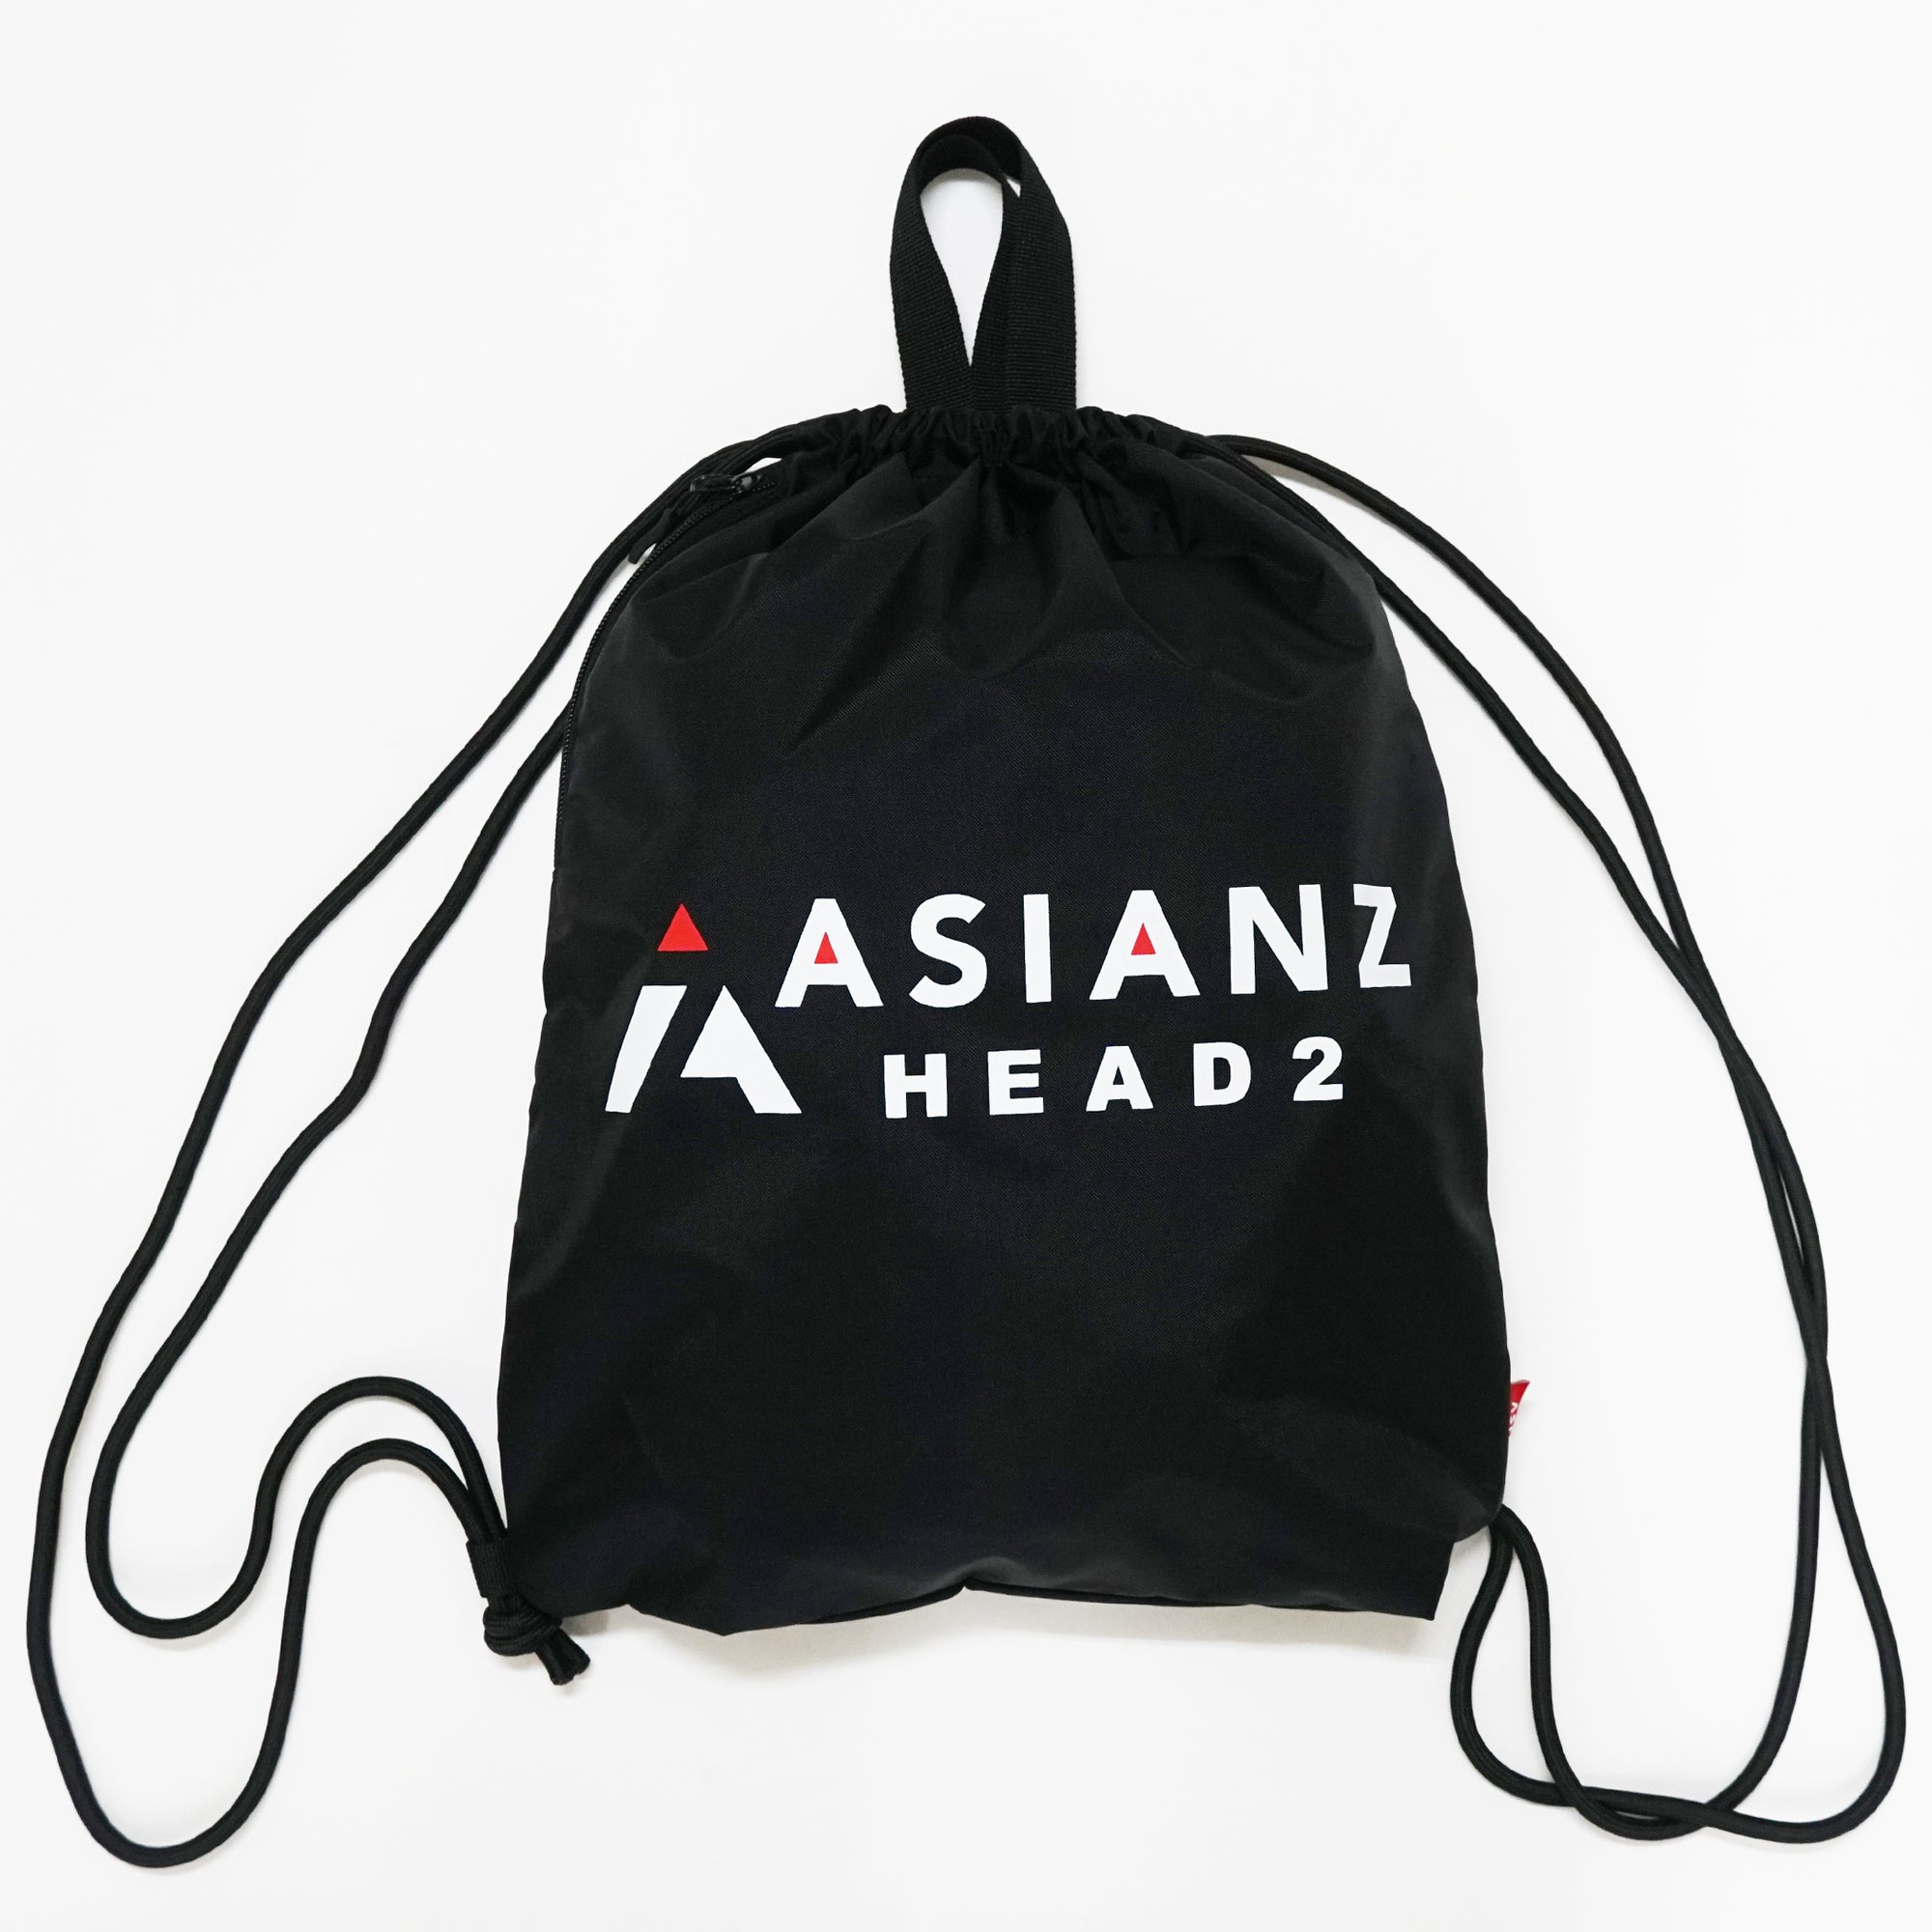 (40%オフ! セール商品)ASIANZ HEAD2 ナップサック